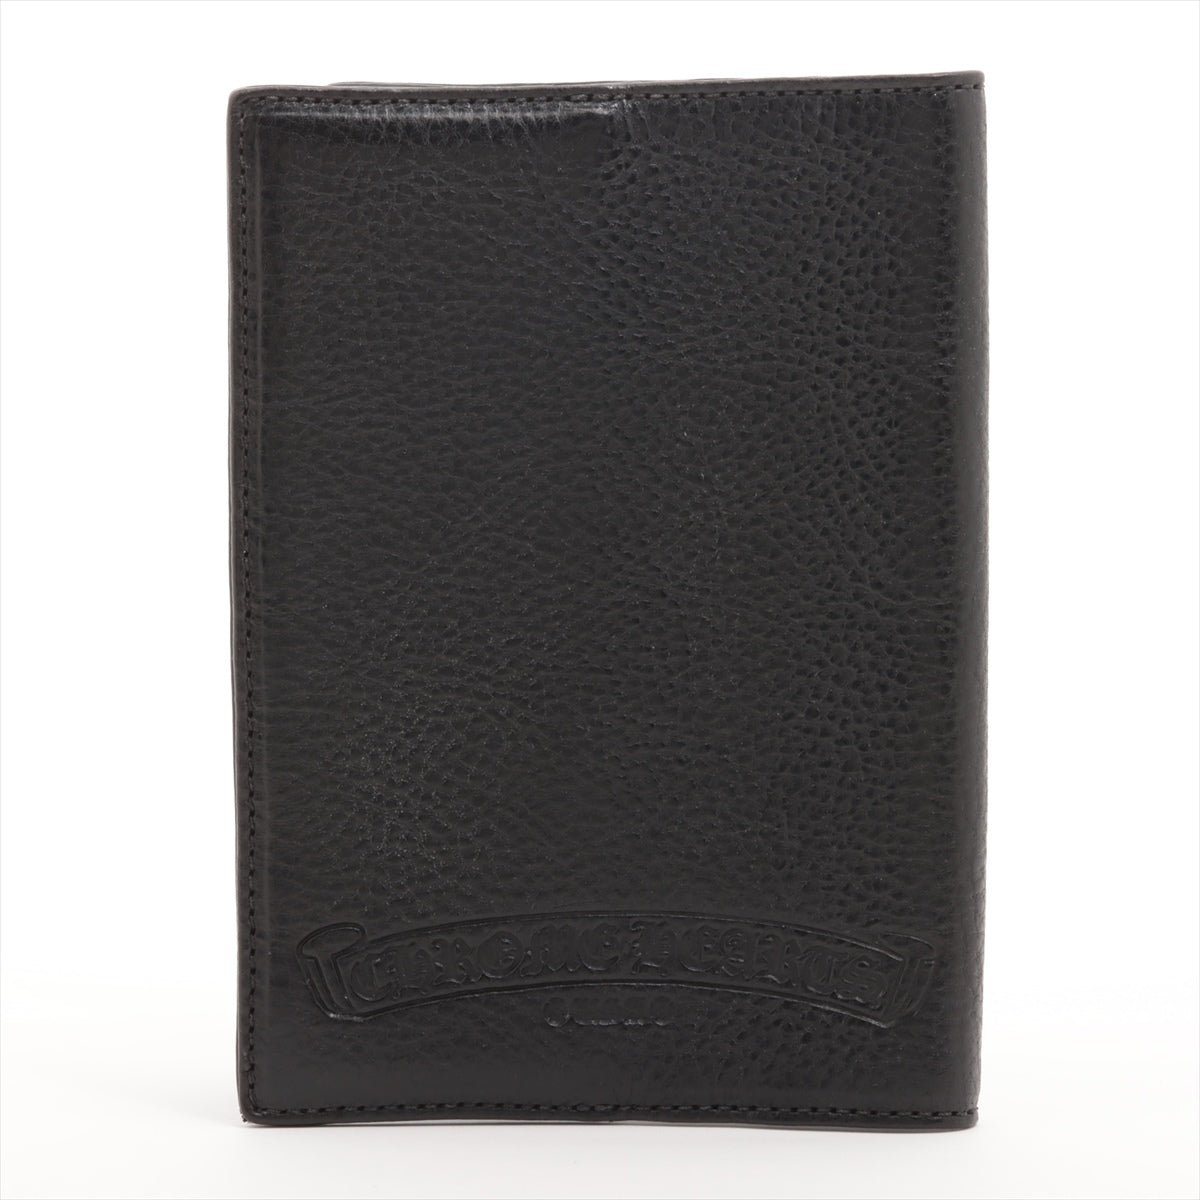 クロムハーツ パスポートケース 素材不明 インボイスアリ ブラック クロスパッチ